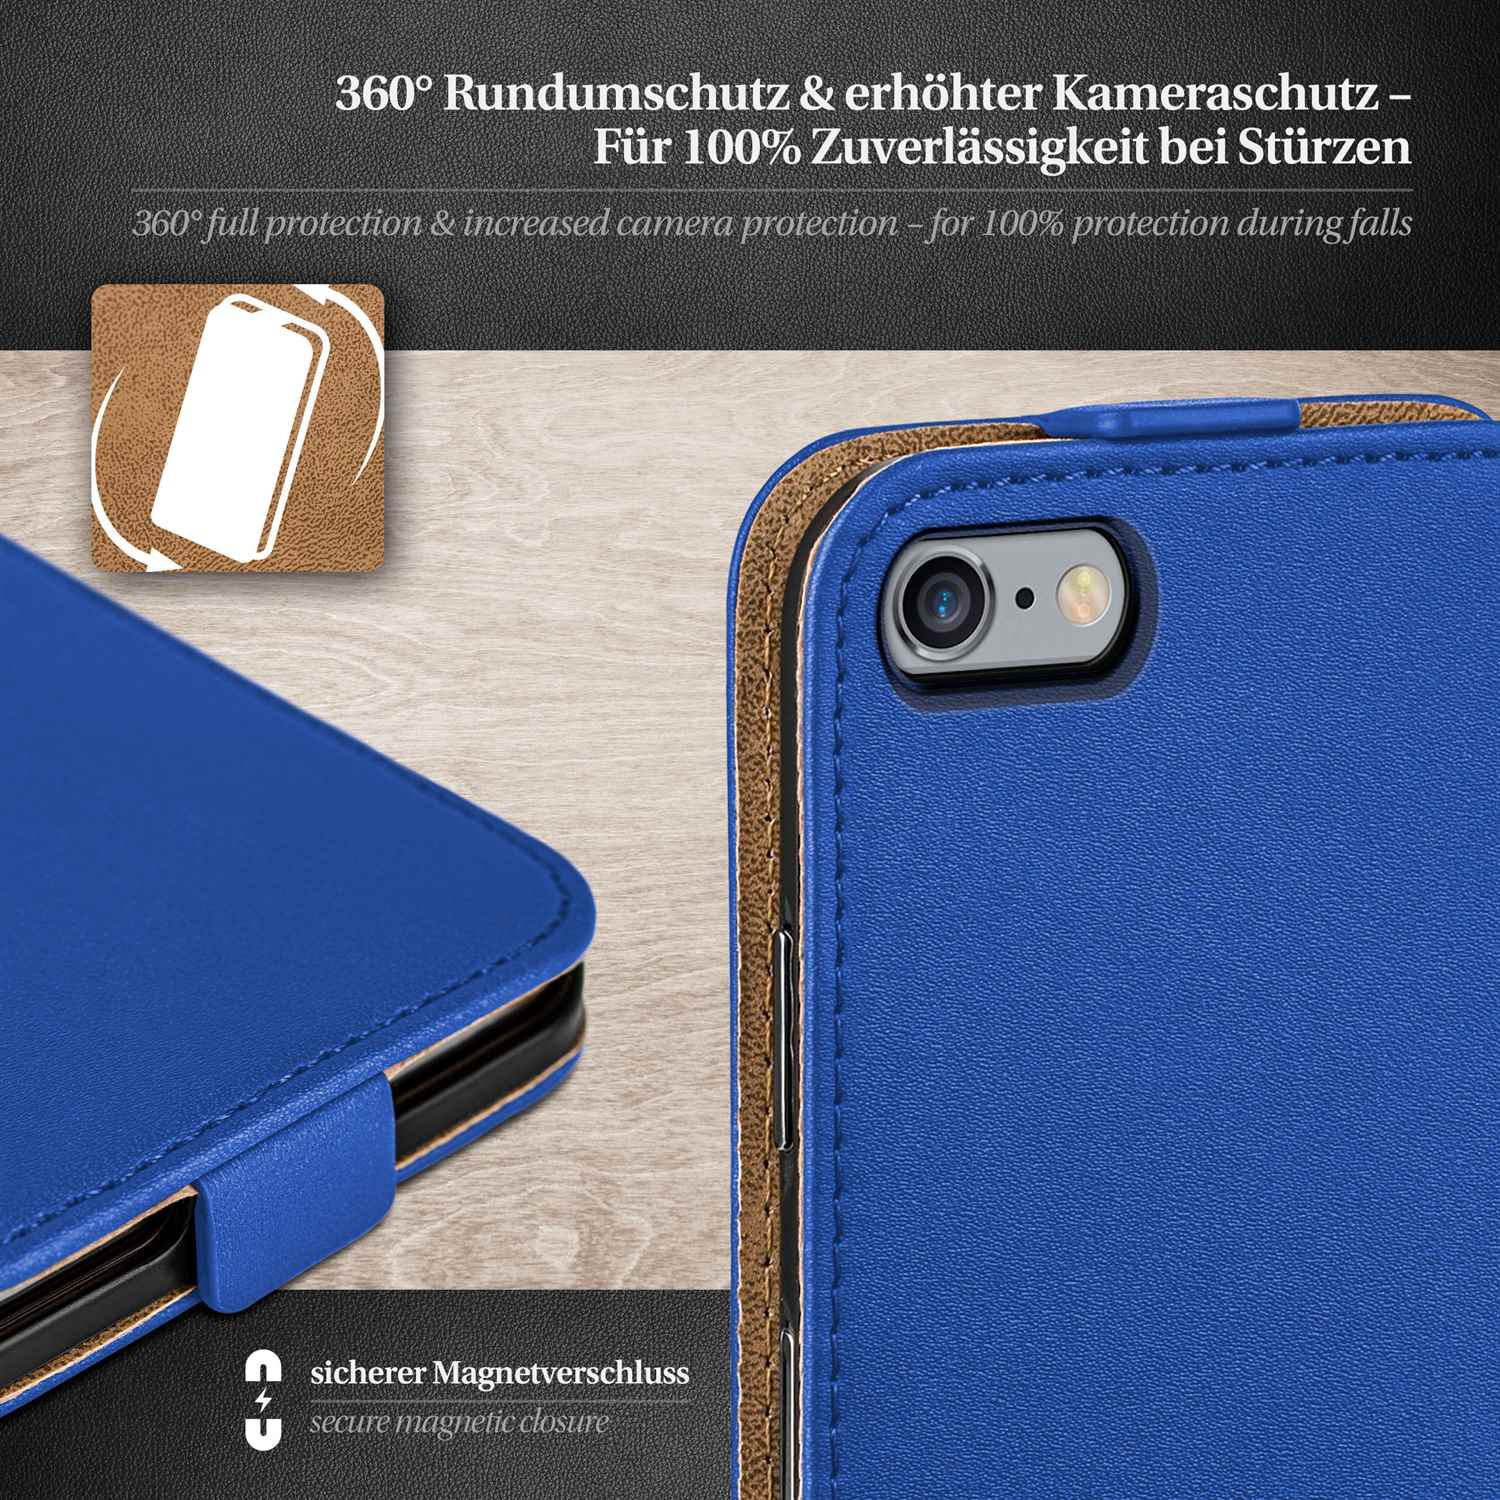 MOEX Flip iPhone 6 Flip Royal-Blue Case, Cover, Apple, Plus